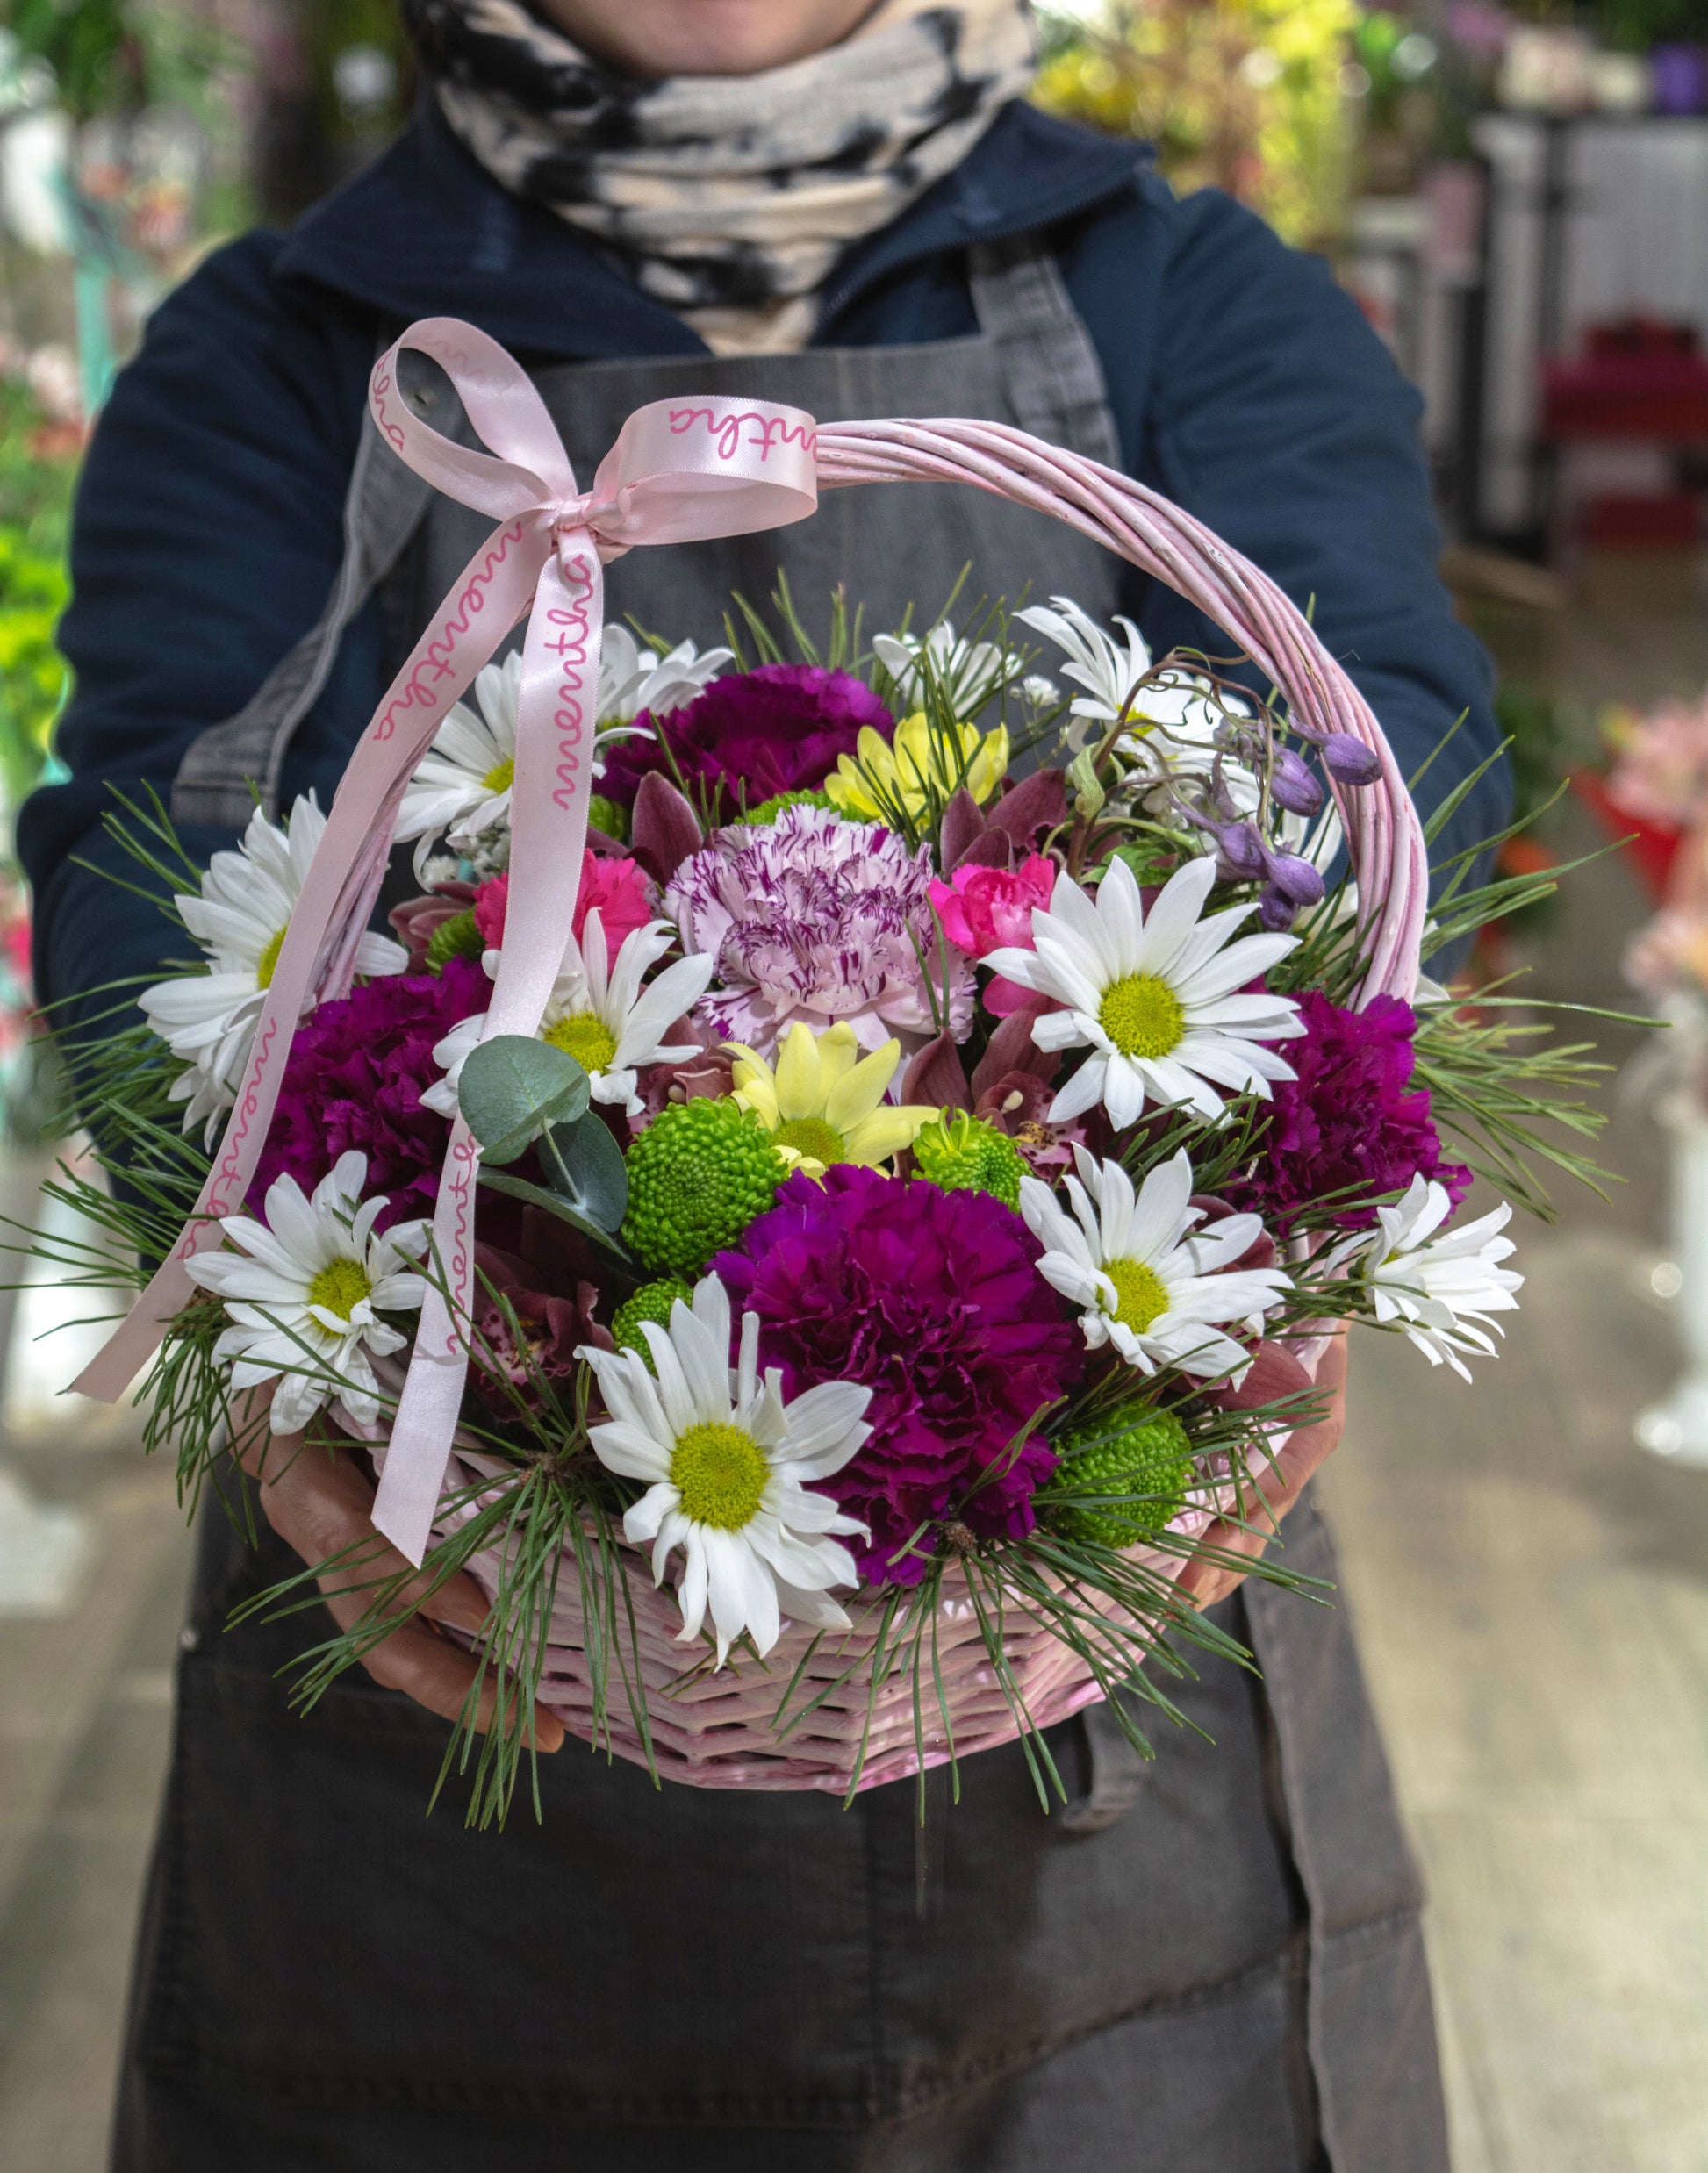 O imagine detaliată a coșului cu flori albe și roz, un aranjament floral elegant și rafinat, perfect pentru orice ocazie specială.